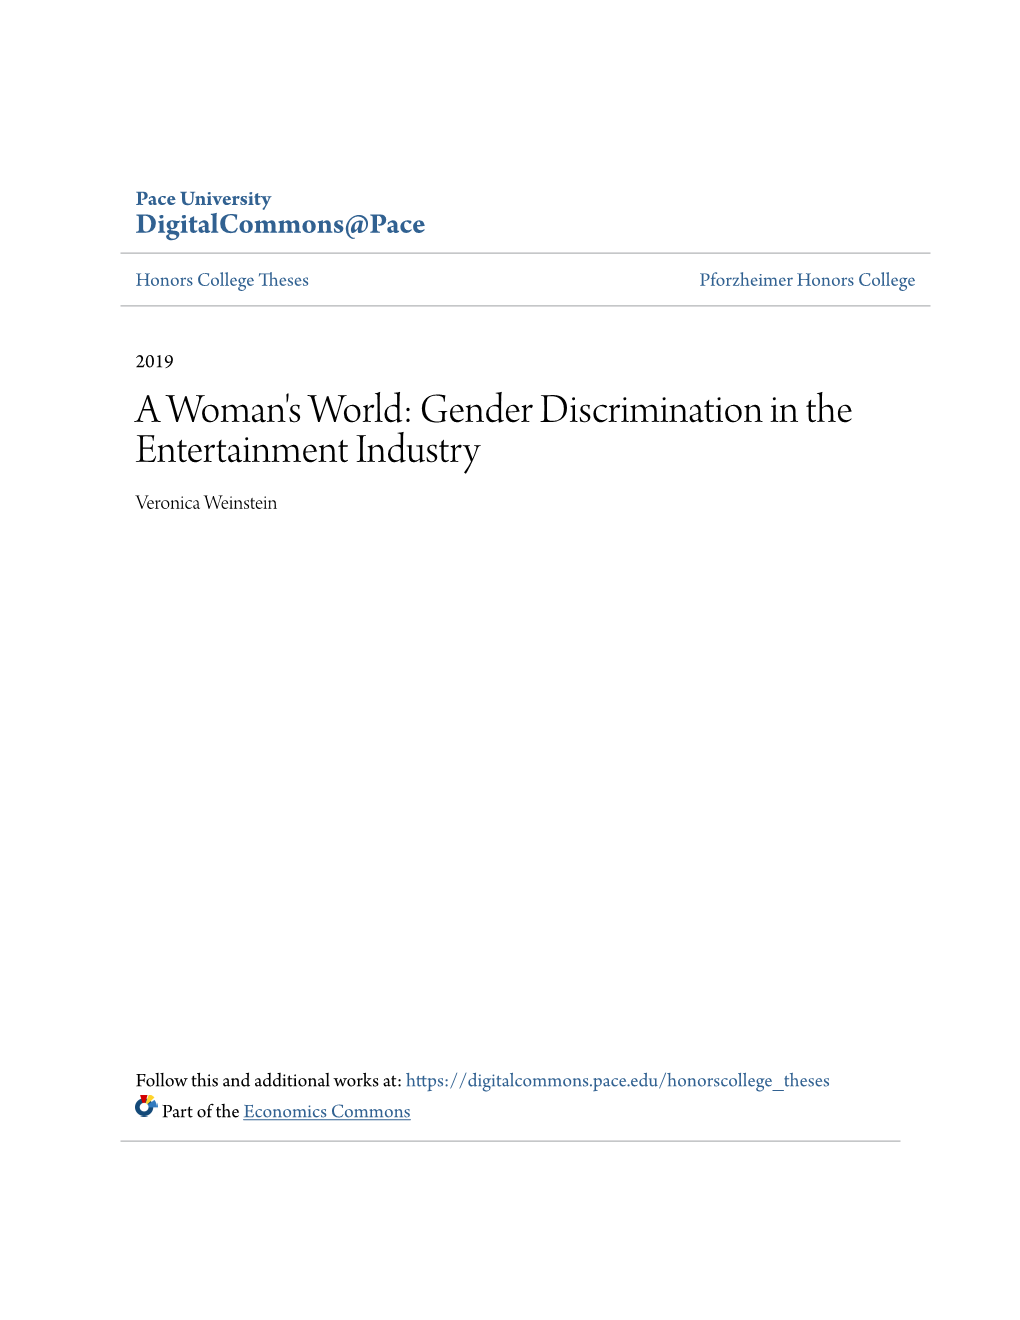 Gender Discrimination in the Entertainment Industry Veronica Weinstein